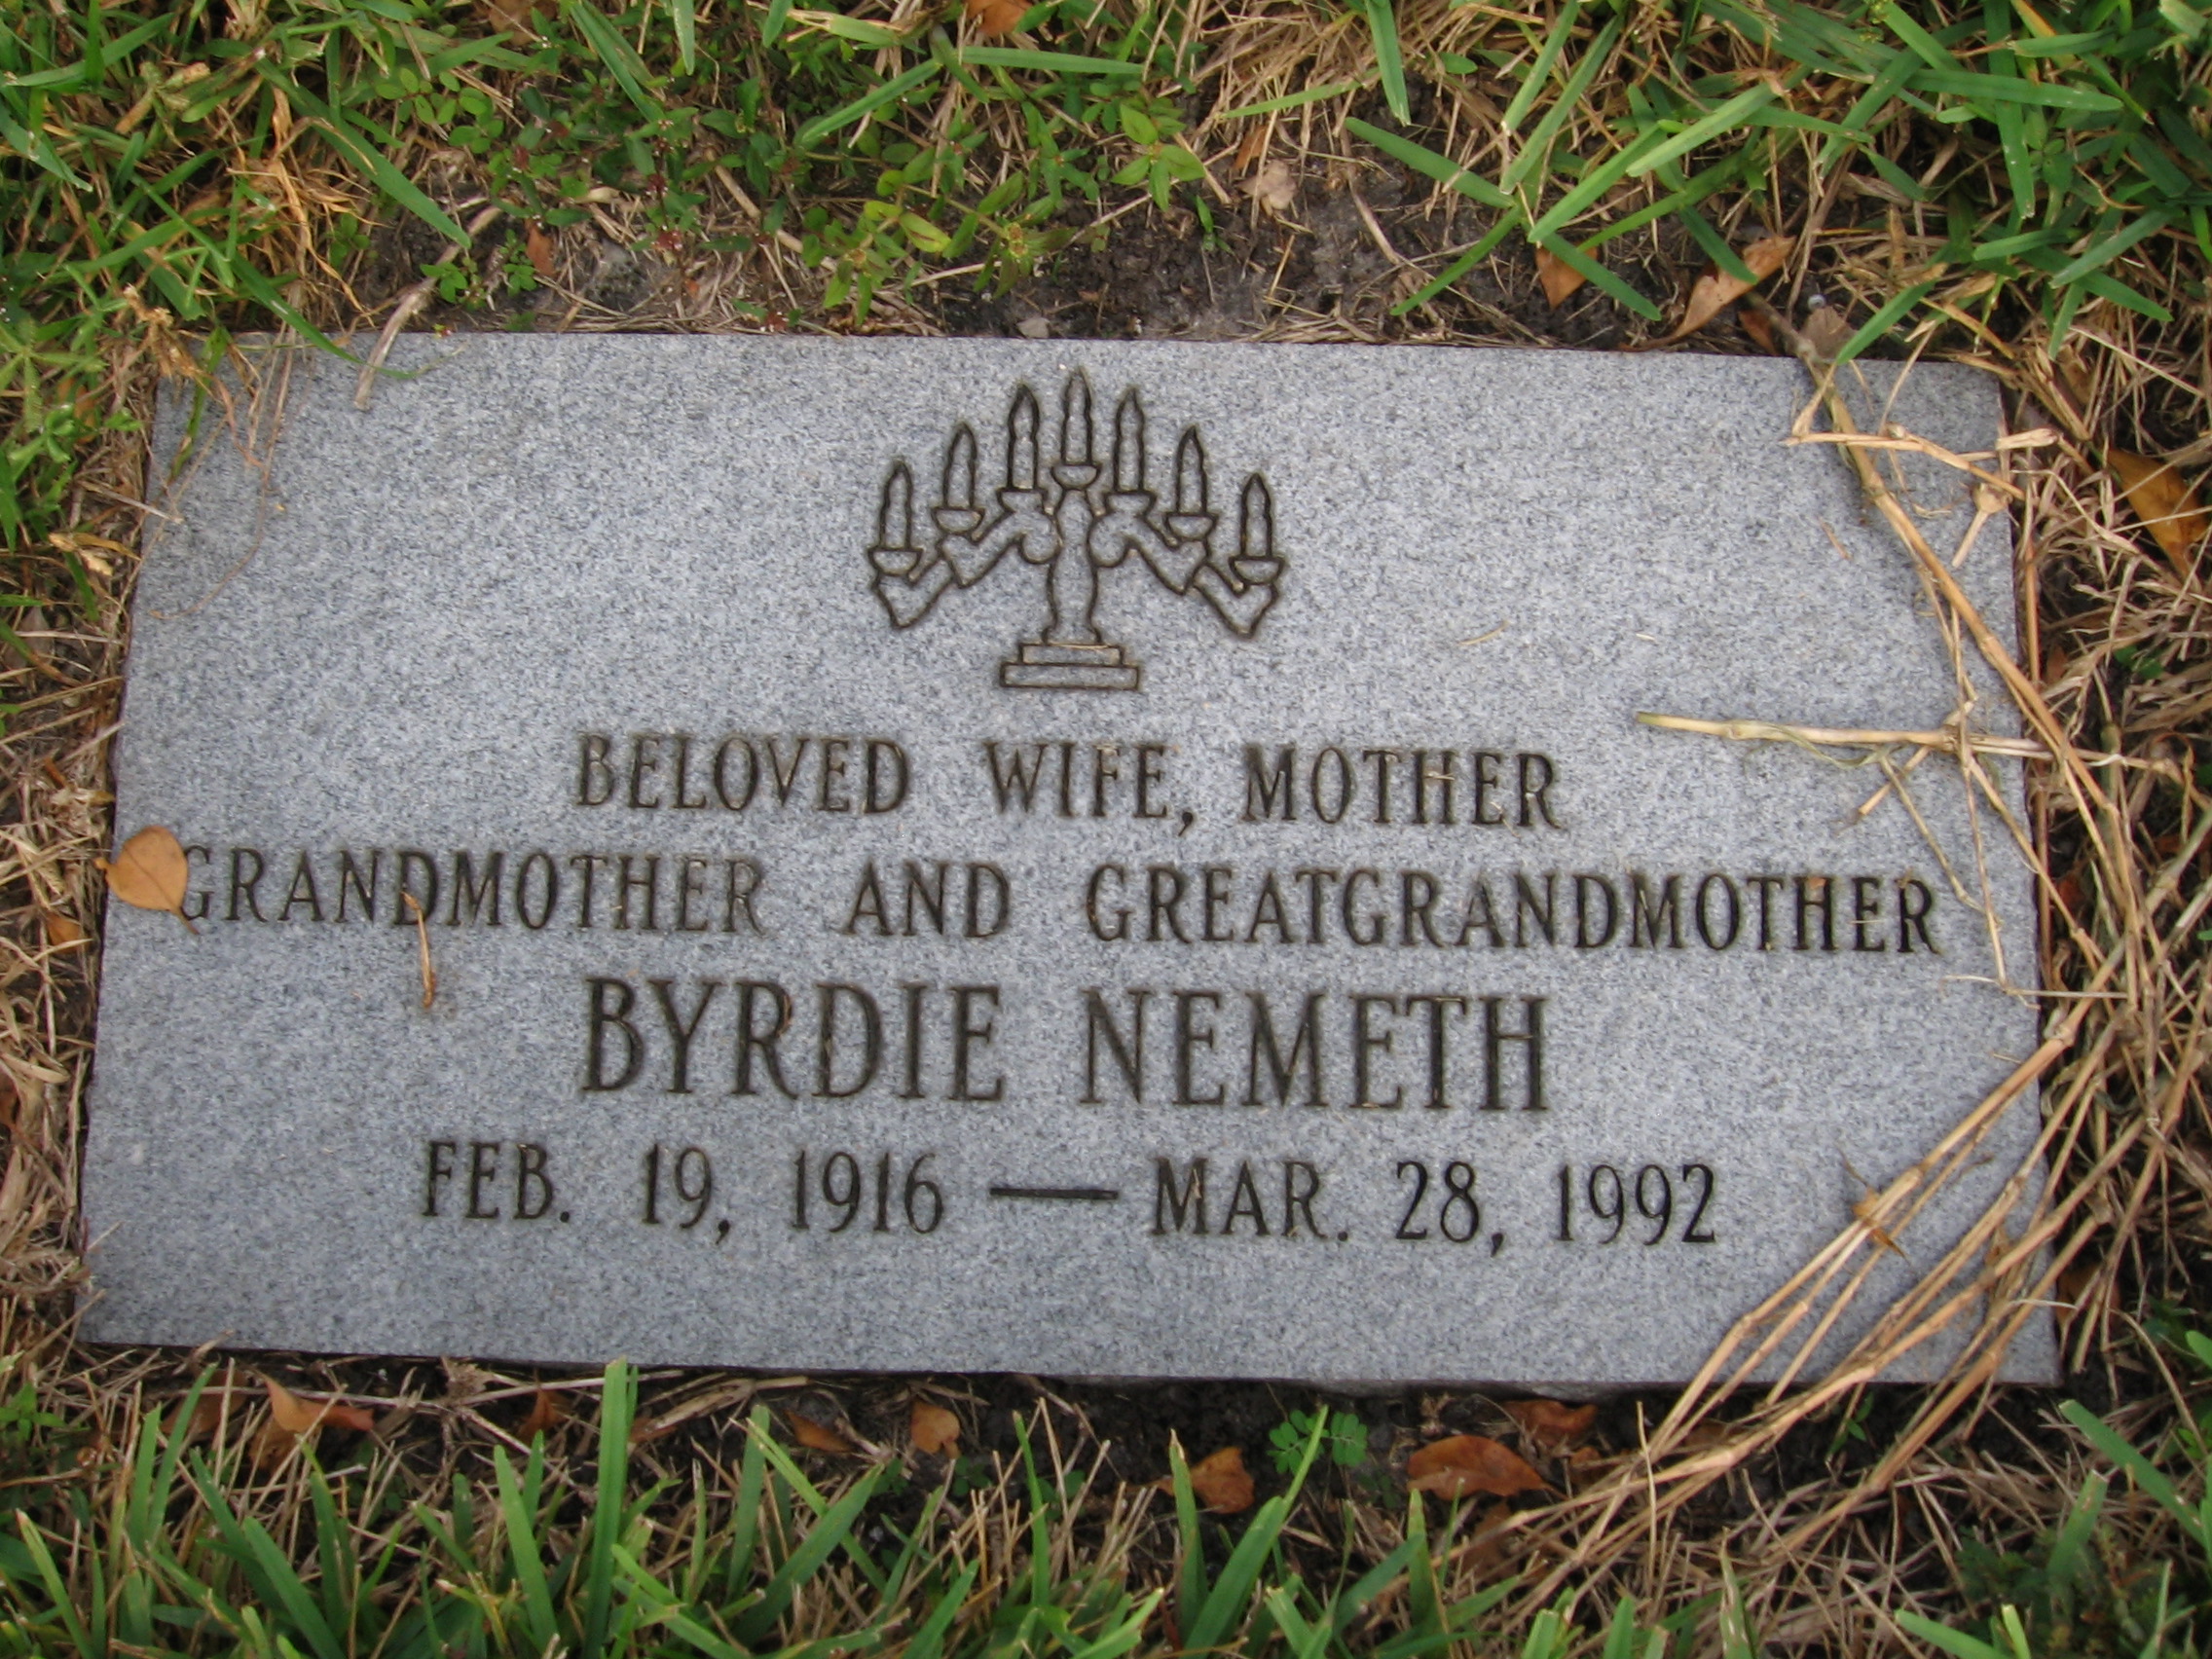 Byrdie Nemeth